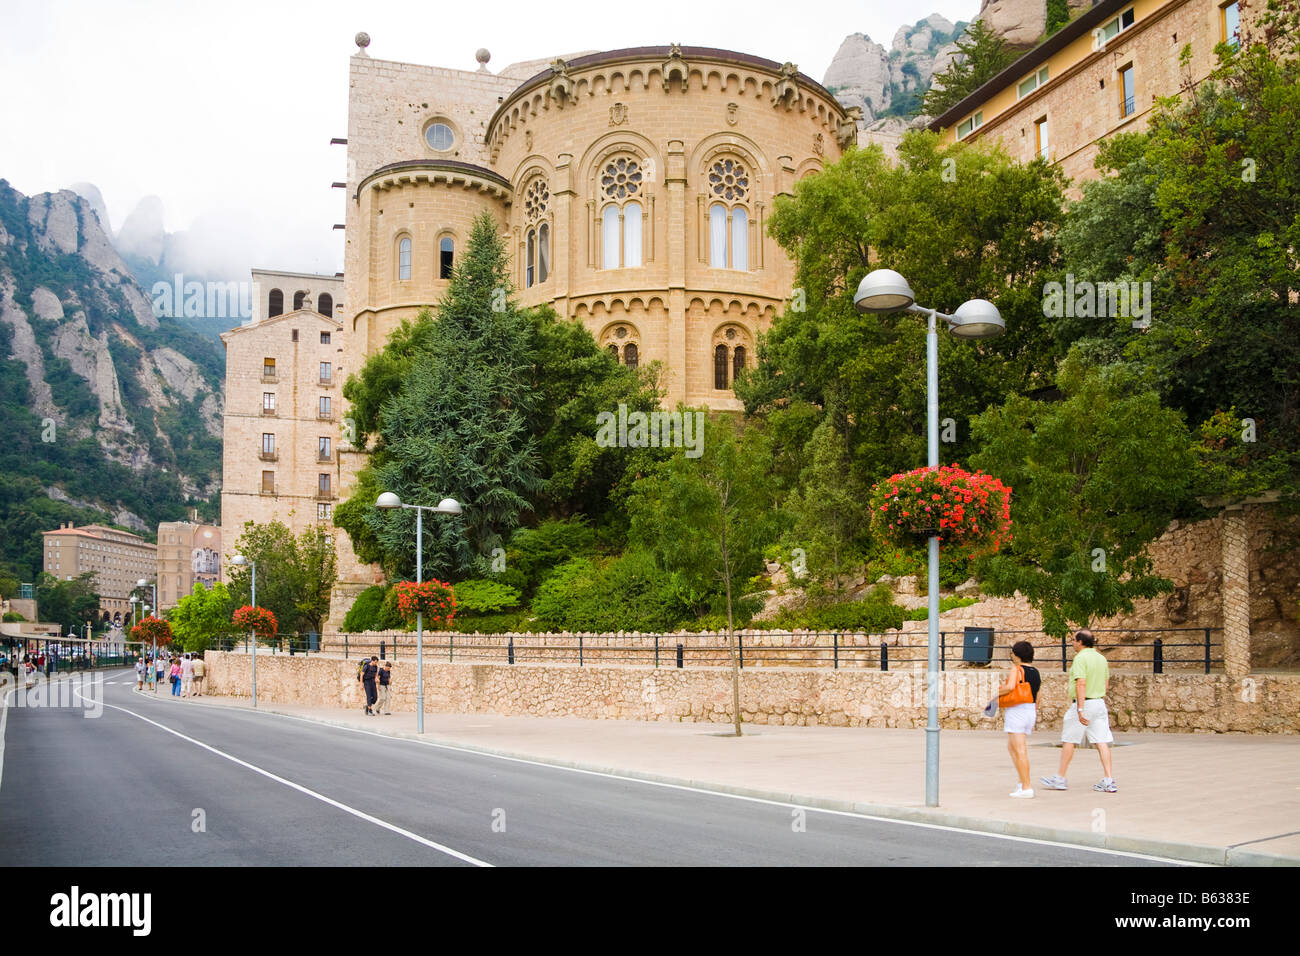 Basilique et Monastère de Montserrat, Montserrat, près de Barcelone, Espagne Banque D'Images